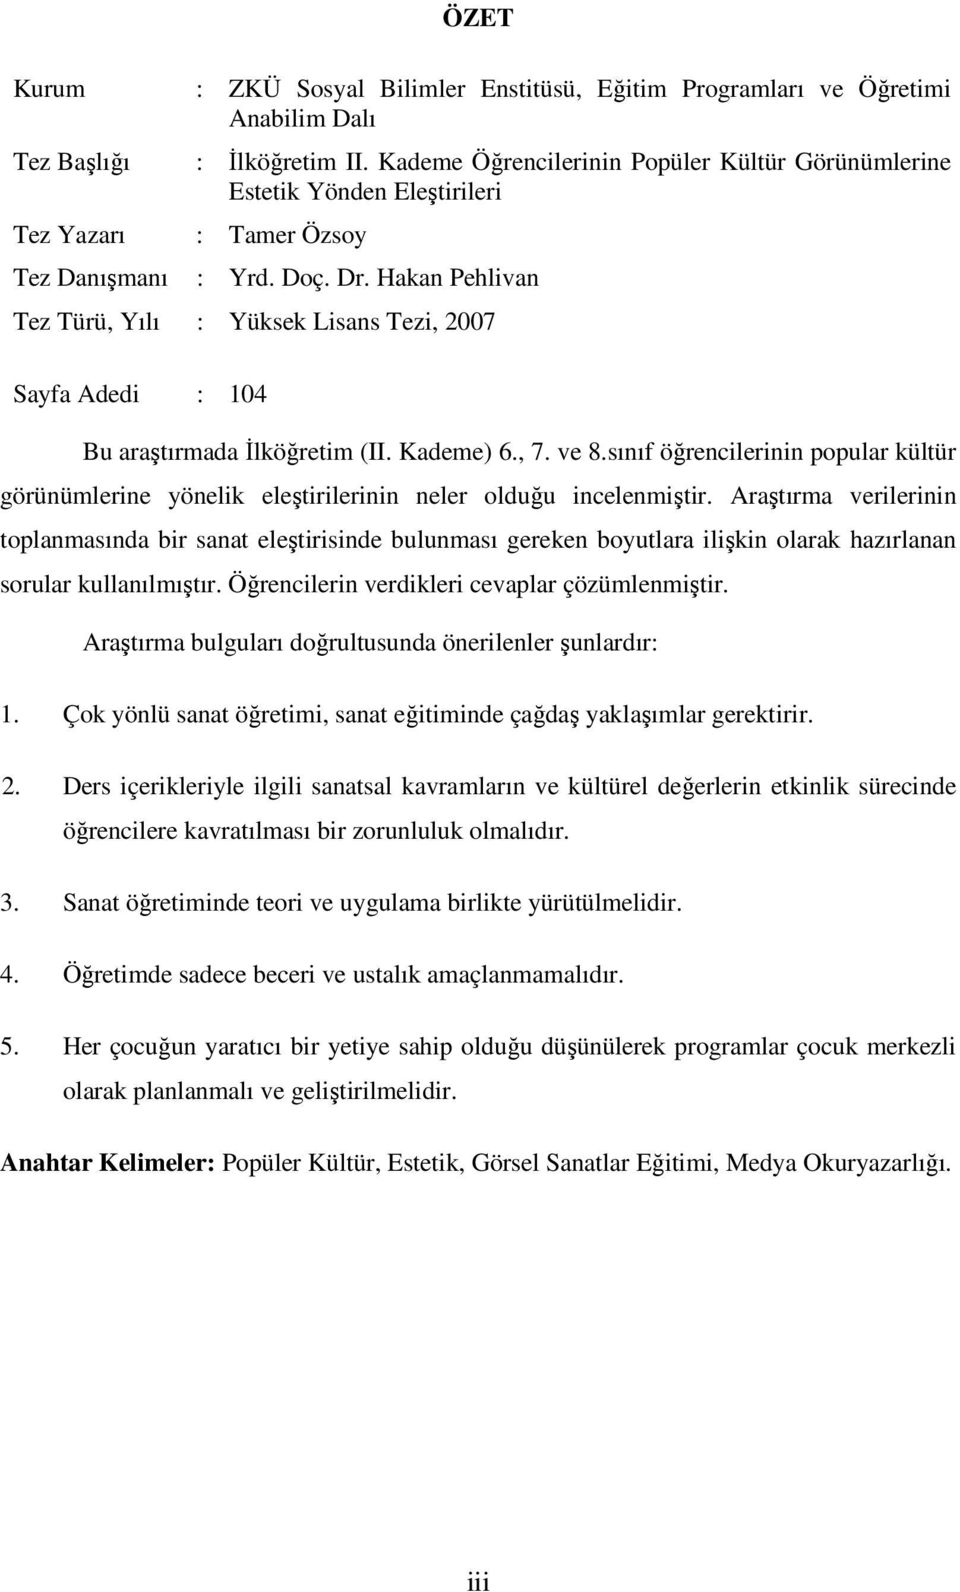 Hakan Pehlivan Tez Türü, Yılı : Yüksek Lisans Tezi, 2007 Sayfa Adedi : 104 Bu araştırmada İlköğretim (II. Kademe) 6., 7. ve 8.